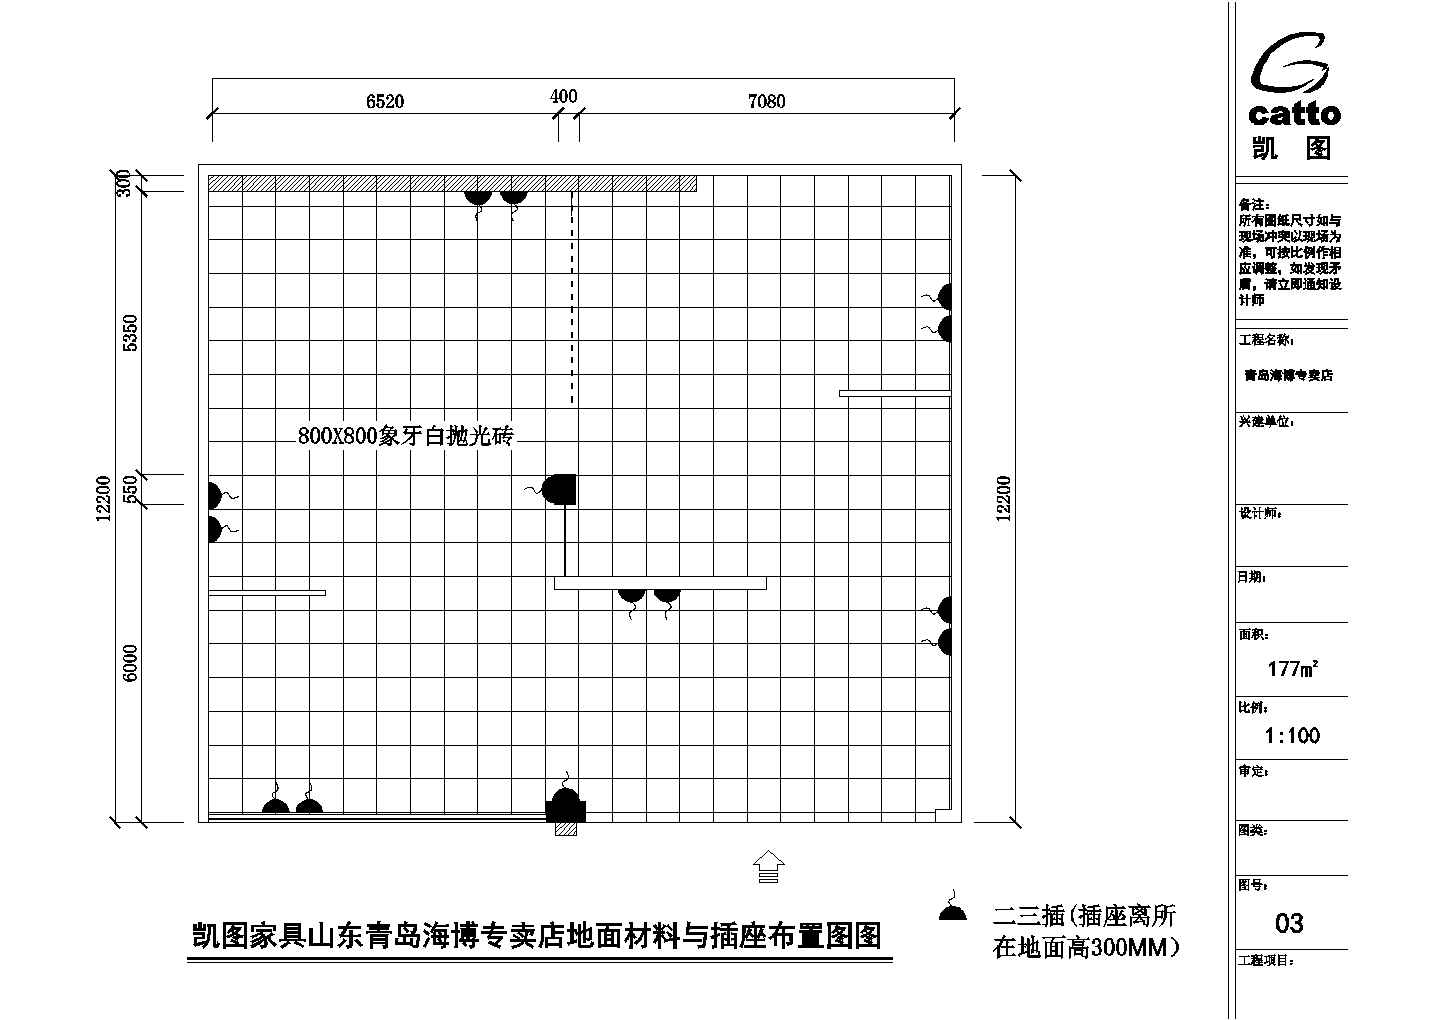 【青岛】某地精品家具专卖店全套装修设计施工cad图